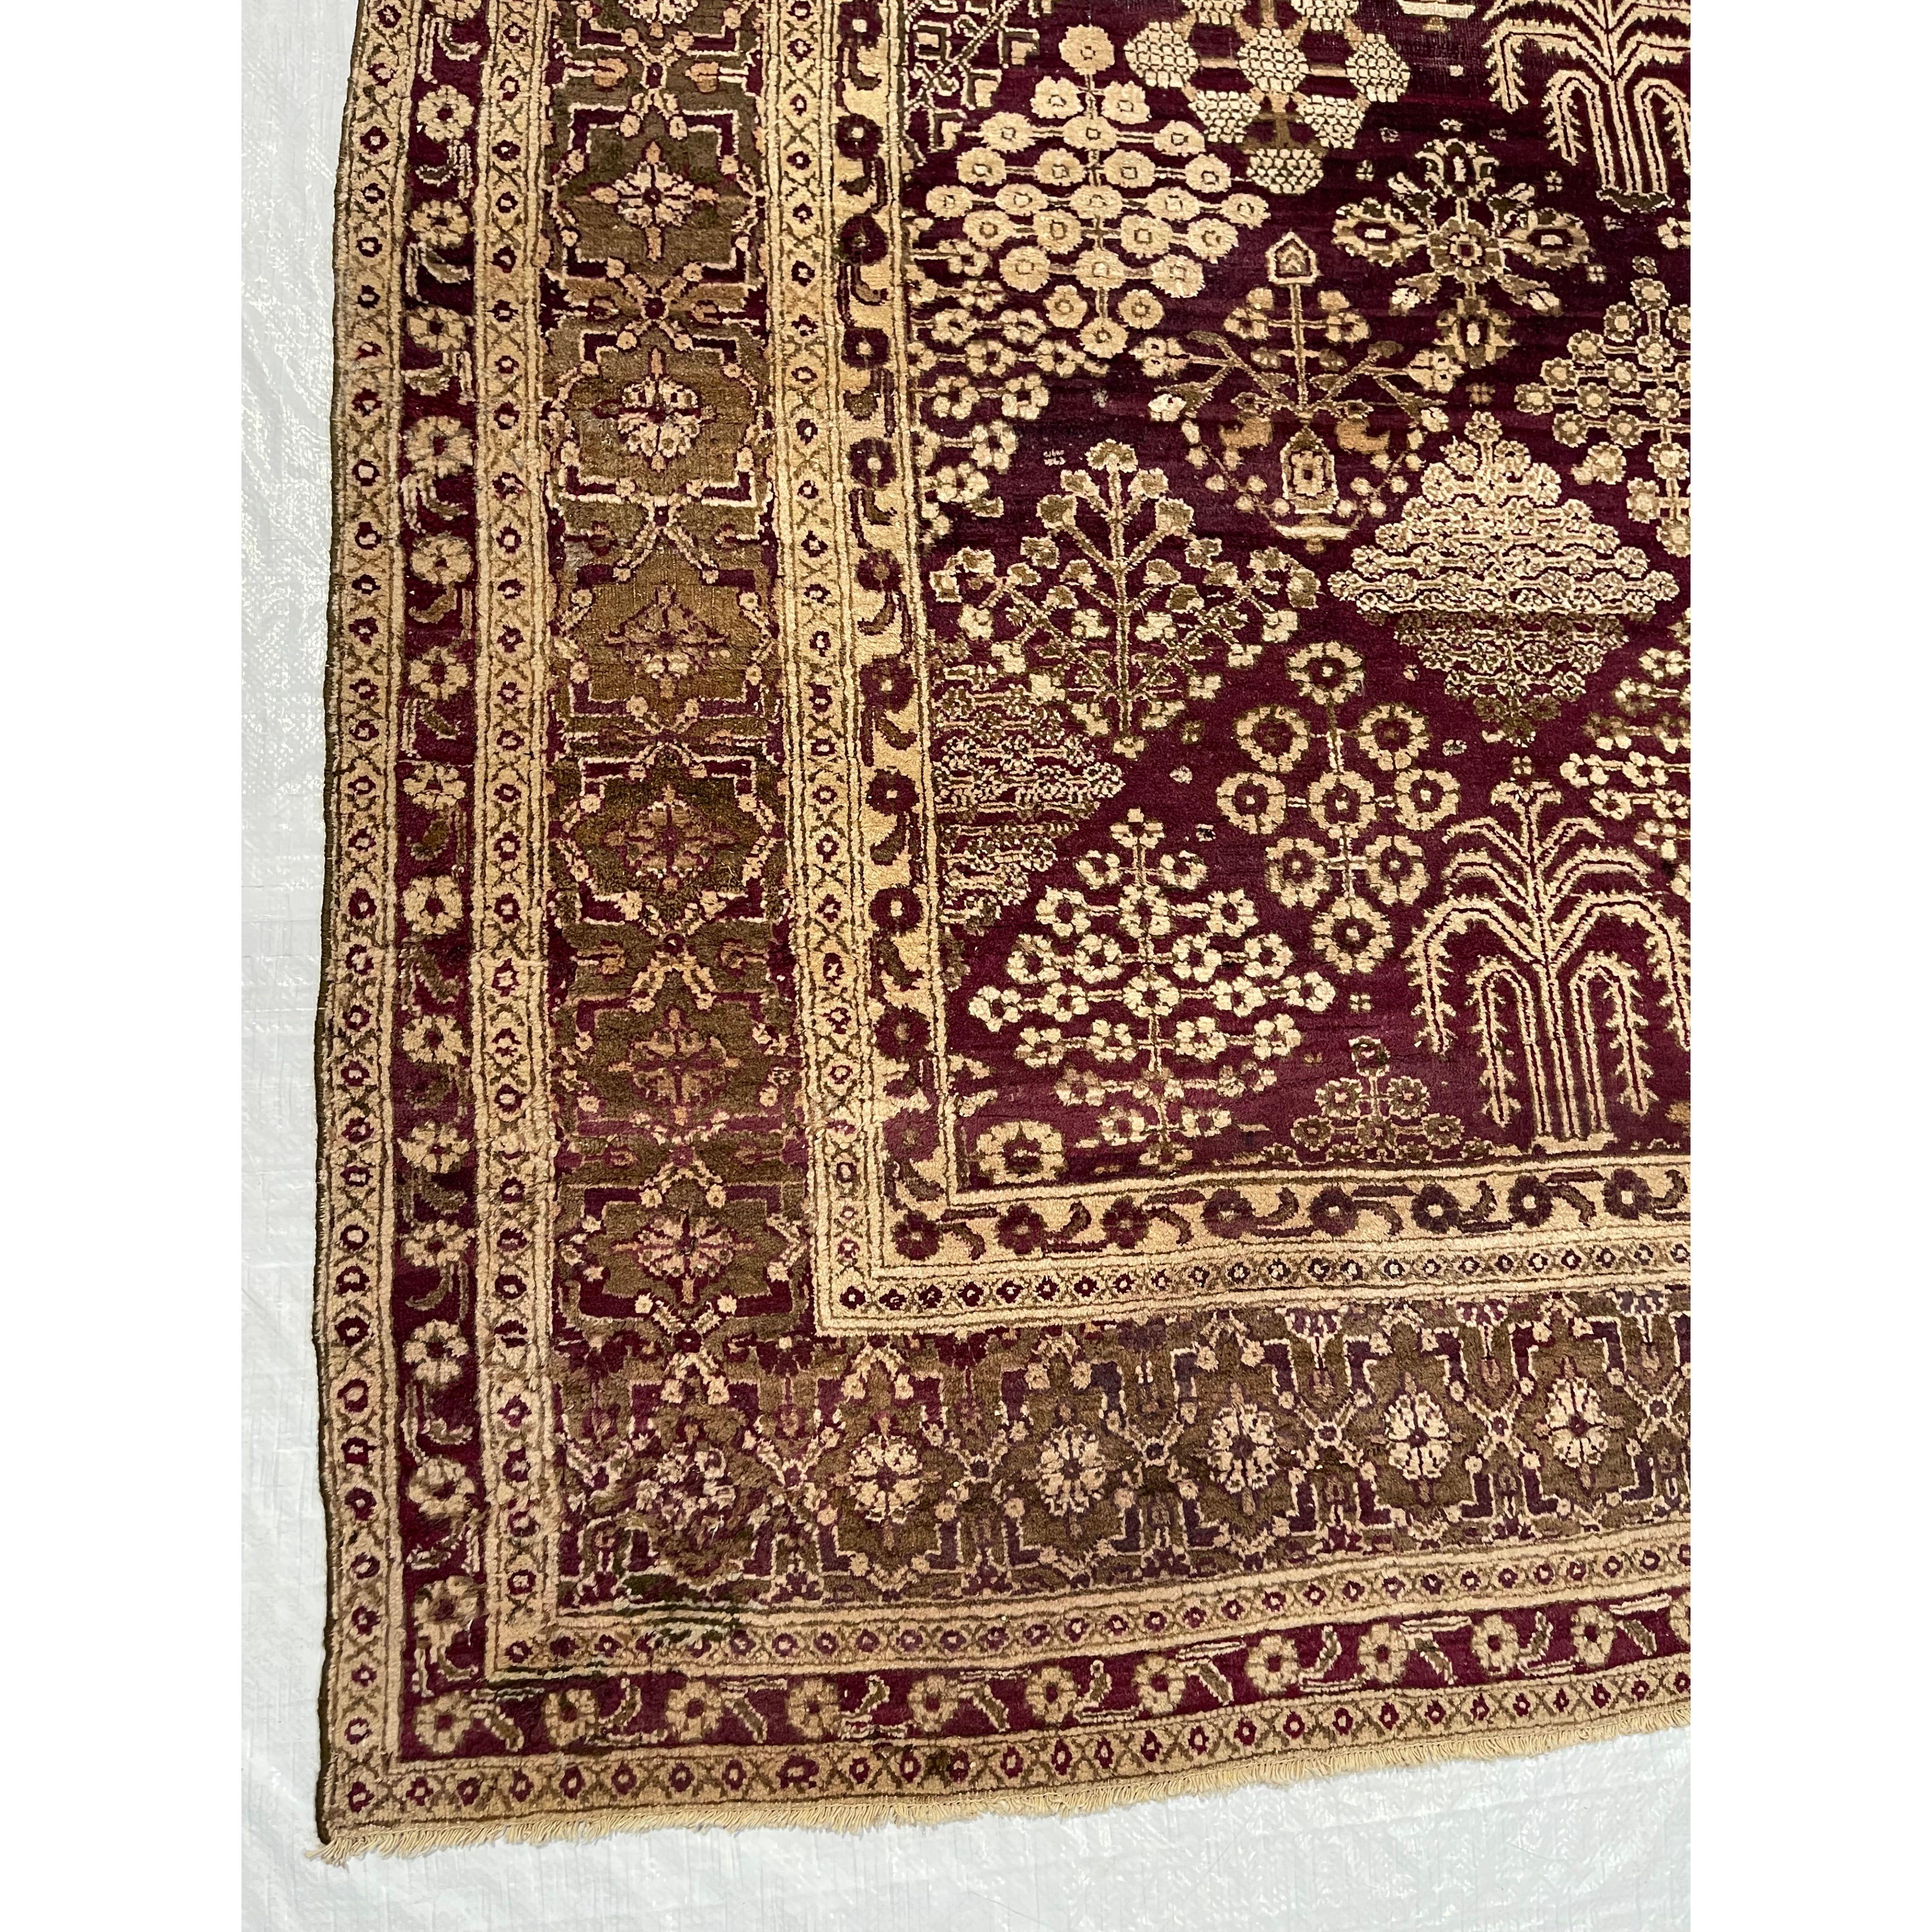 Antike indische Teppiche - Nicht alle Teppiche, die in Indien gewebt wurden, sind leicht zu kategorisieren. Aus diesem Grund haben wir diese Rubrik für antike indische Teppiche eingerichtet. Hier finden Sie indische Teppiche, bei denen die